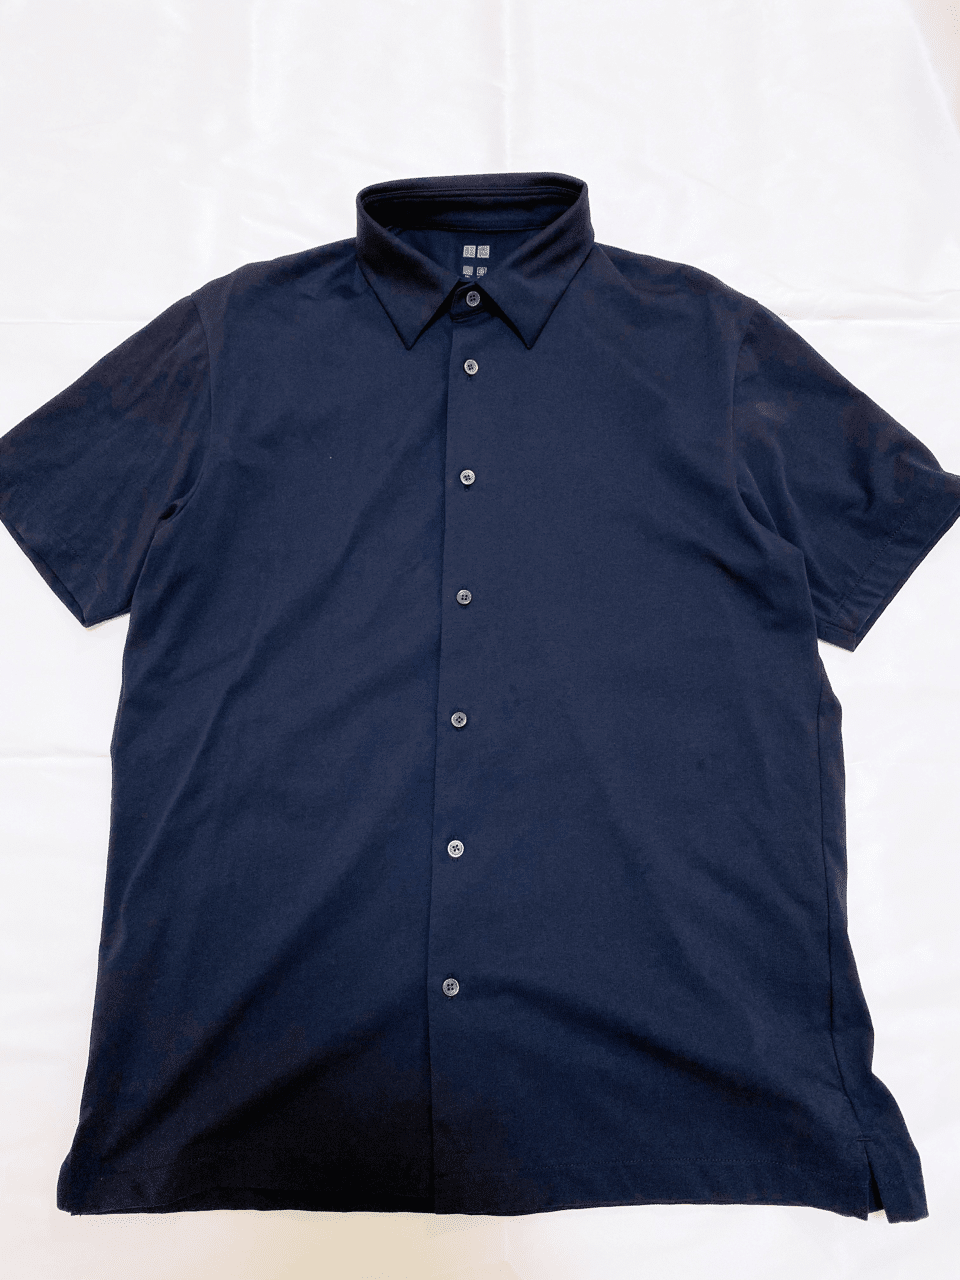 ポロシャツ ジャージー エア リズム ユニクロのエアリズムポロシャツフルオープンは1990円で買える最強半袖シャツ！